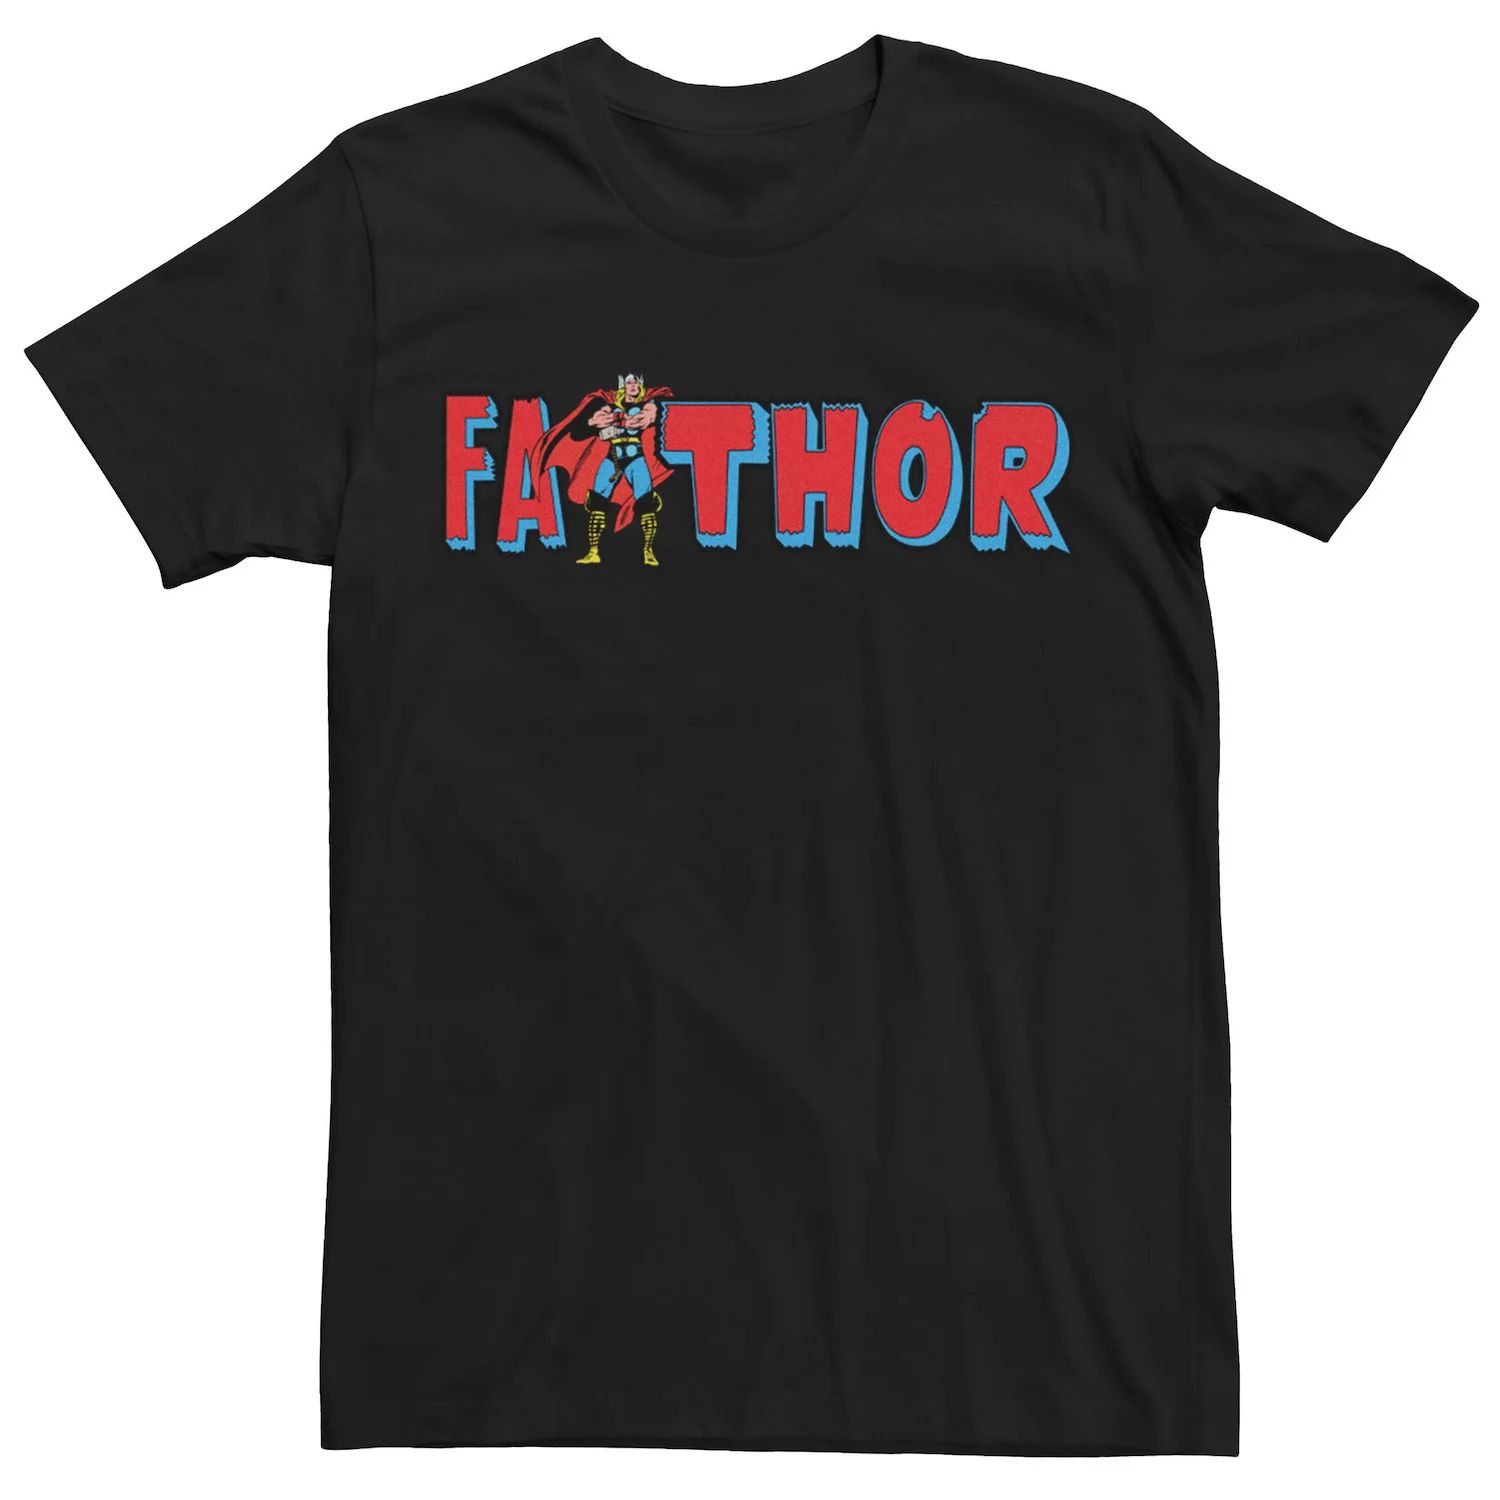 Мужская футболка с рисунком Marvel Thor Fathor